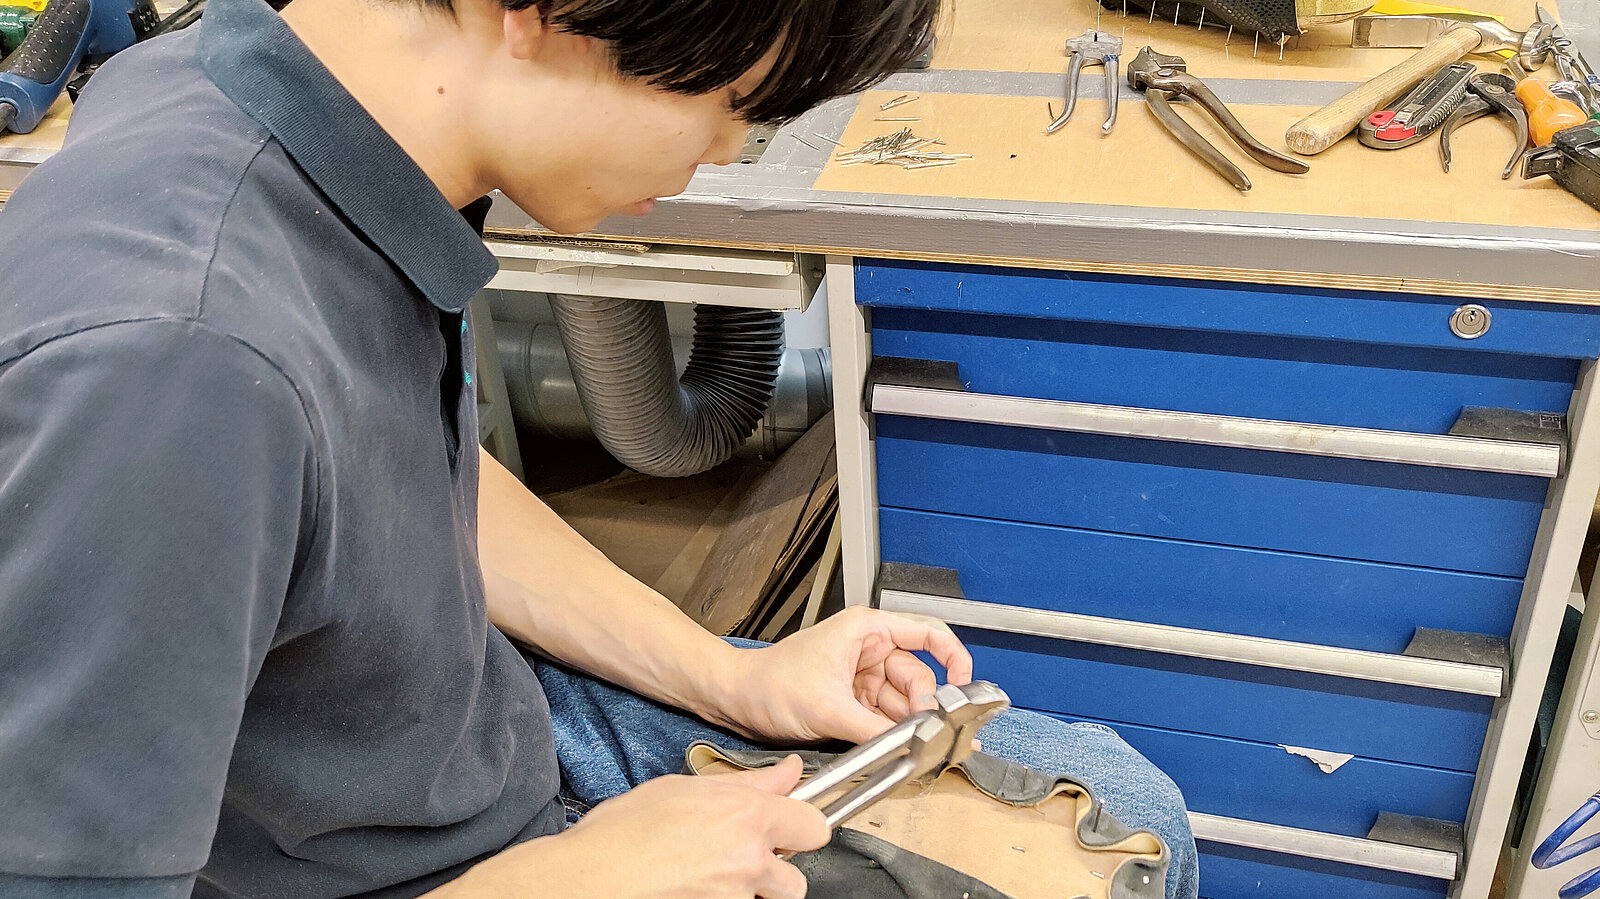 Tsuyoshi arbeitet miteiner Zange das Leder des Schuhs.